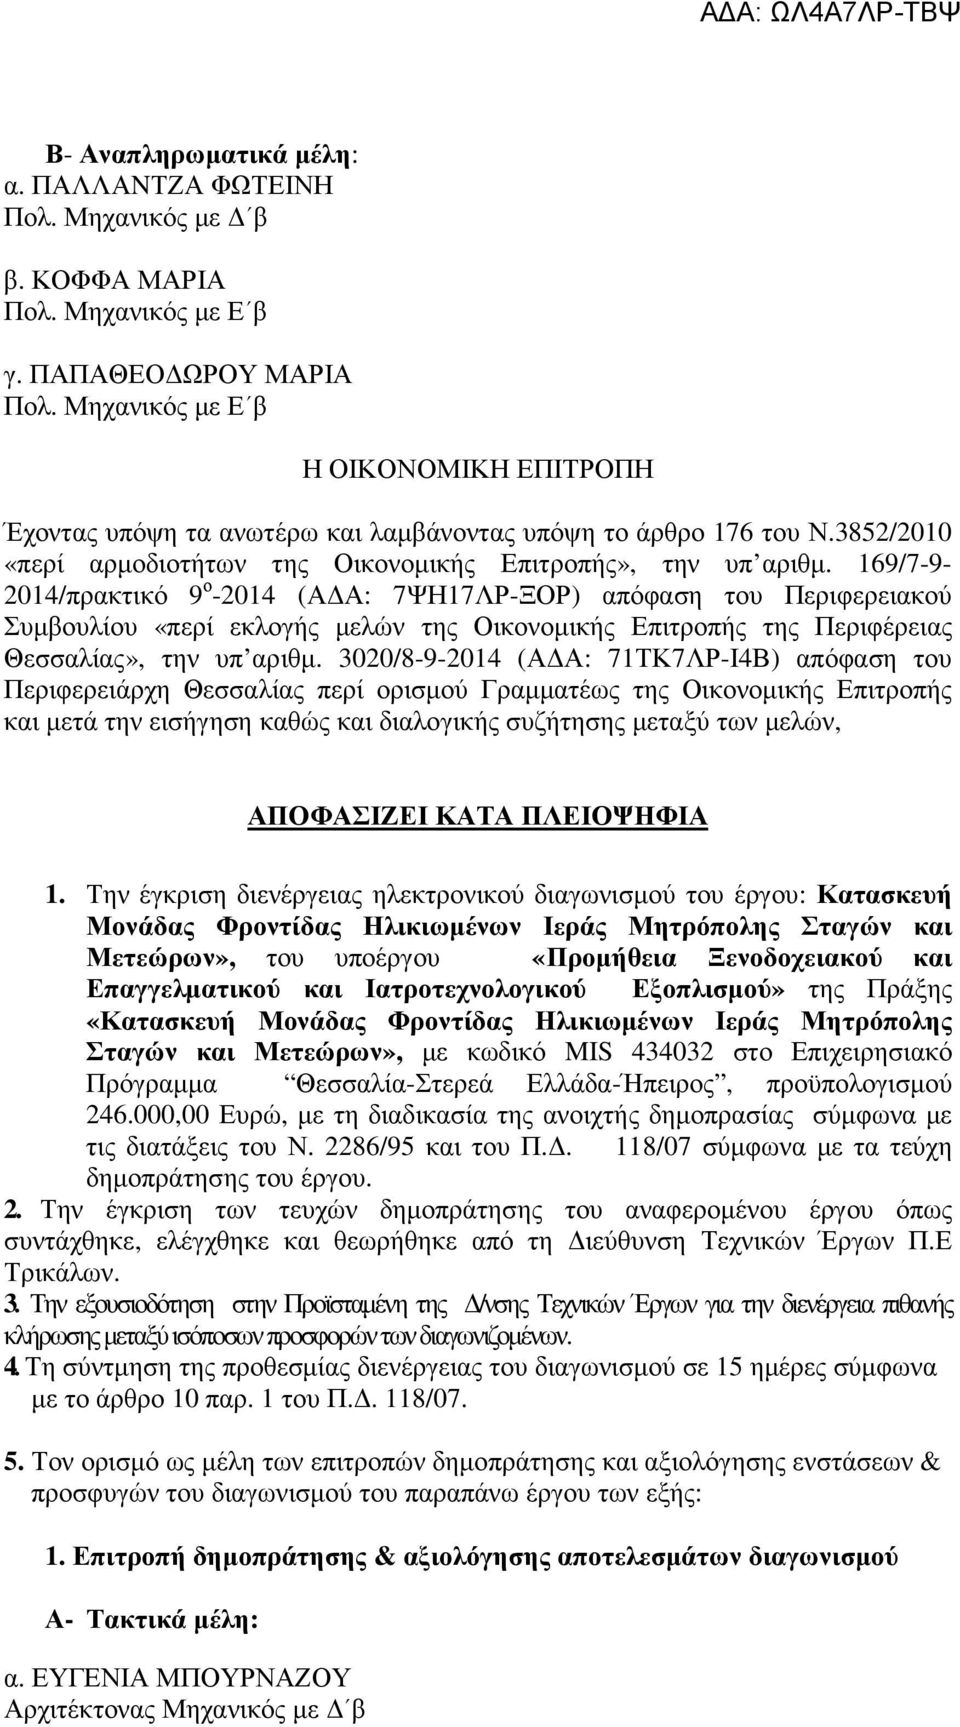 169/7-9- 2014/πρακτικό 9 ο -2014 (ΑΔΑ: 7ΨΗ17ΛΡ-ΞΟΡ) απόφαση του Περιφερειακού Συμβουλίου «περί εκλογής μελών της Οικονομικής Επιτροπής της Περιφέρειας Θεσσαλίας», την υπ αριθμ.